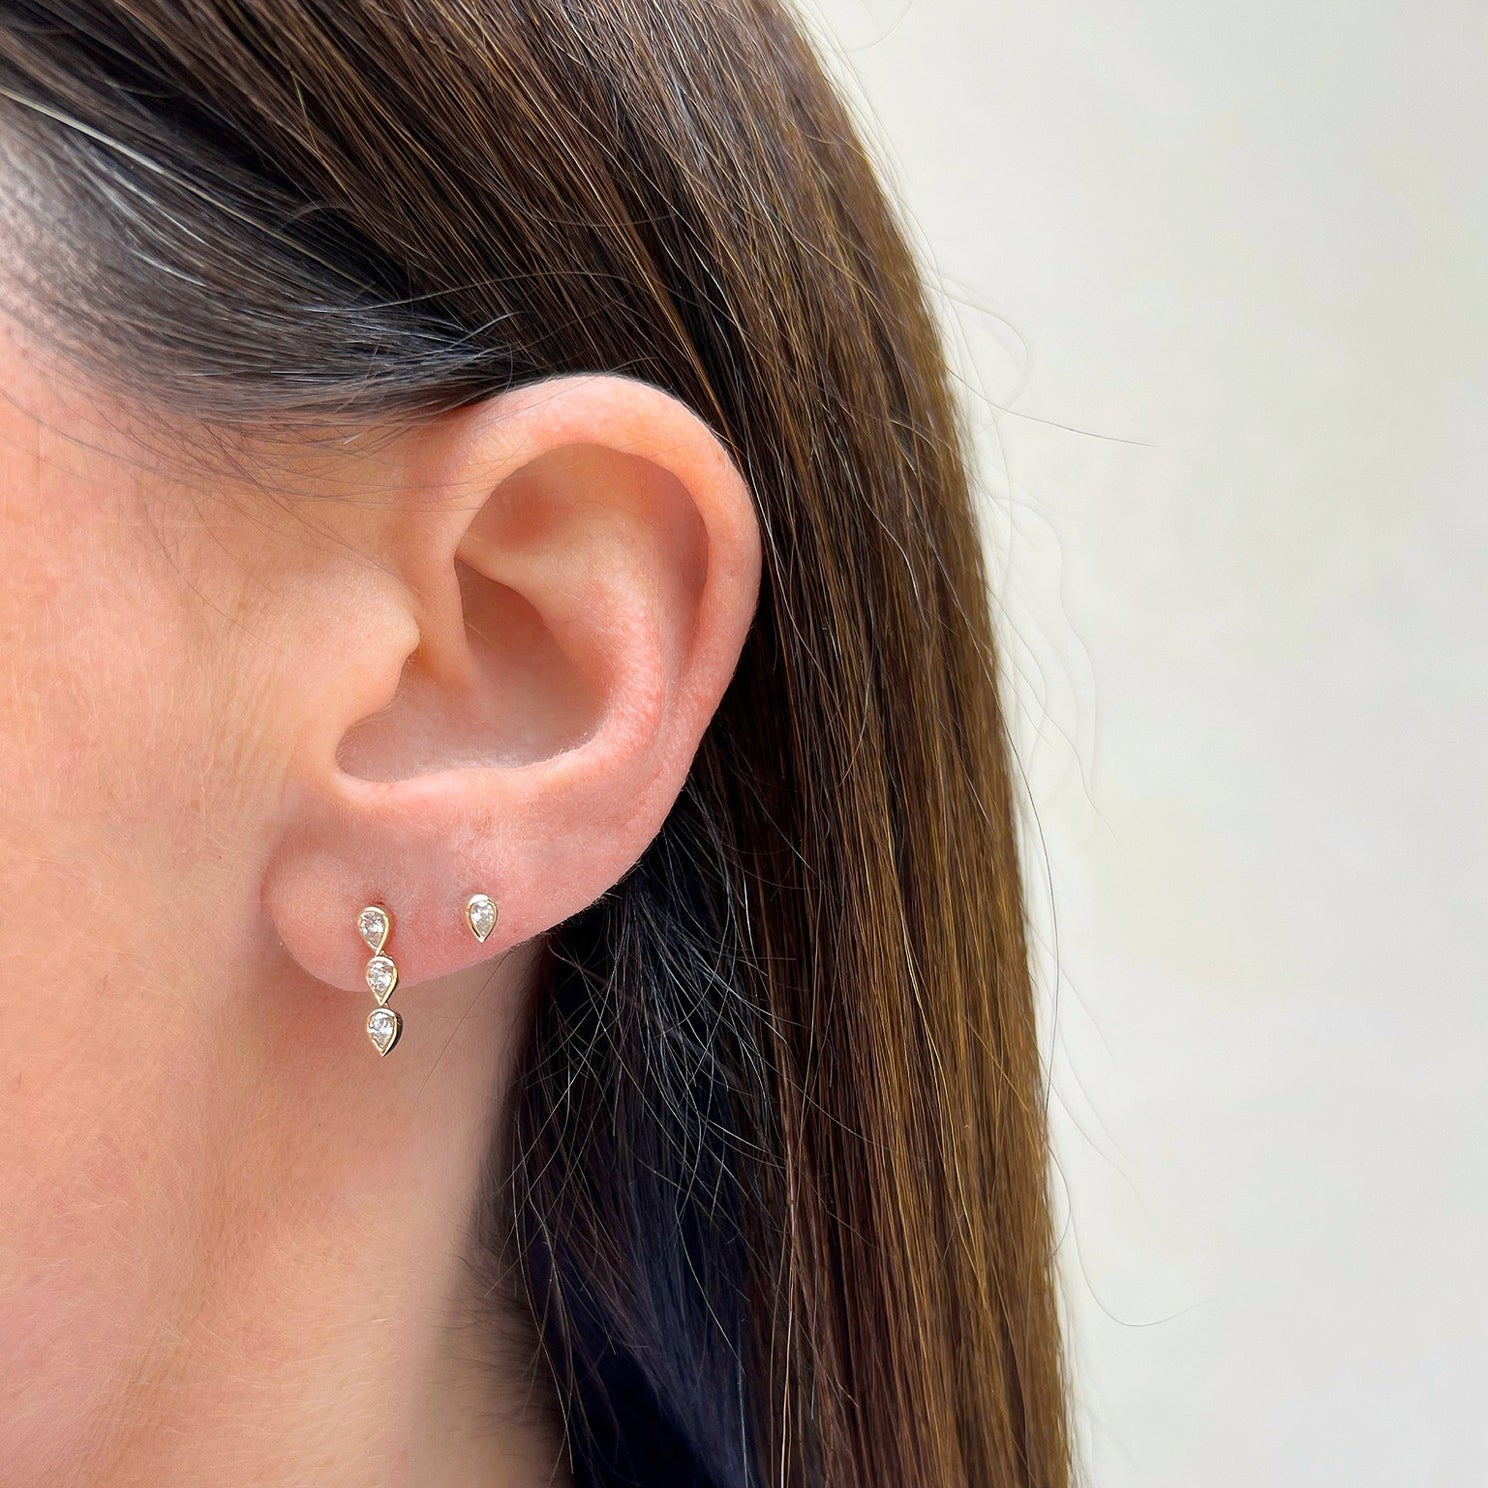 Bezel Set Triple Diamond Pear Stud Earring in 14k yellow gold next to diamond stud styled on ear lobe of model